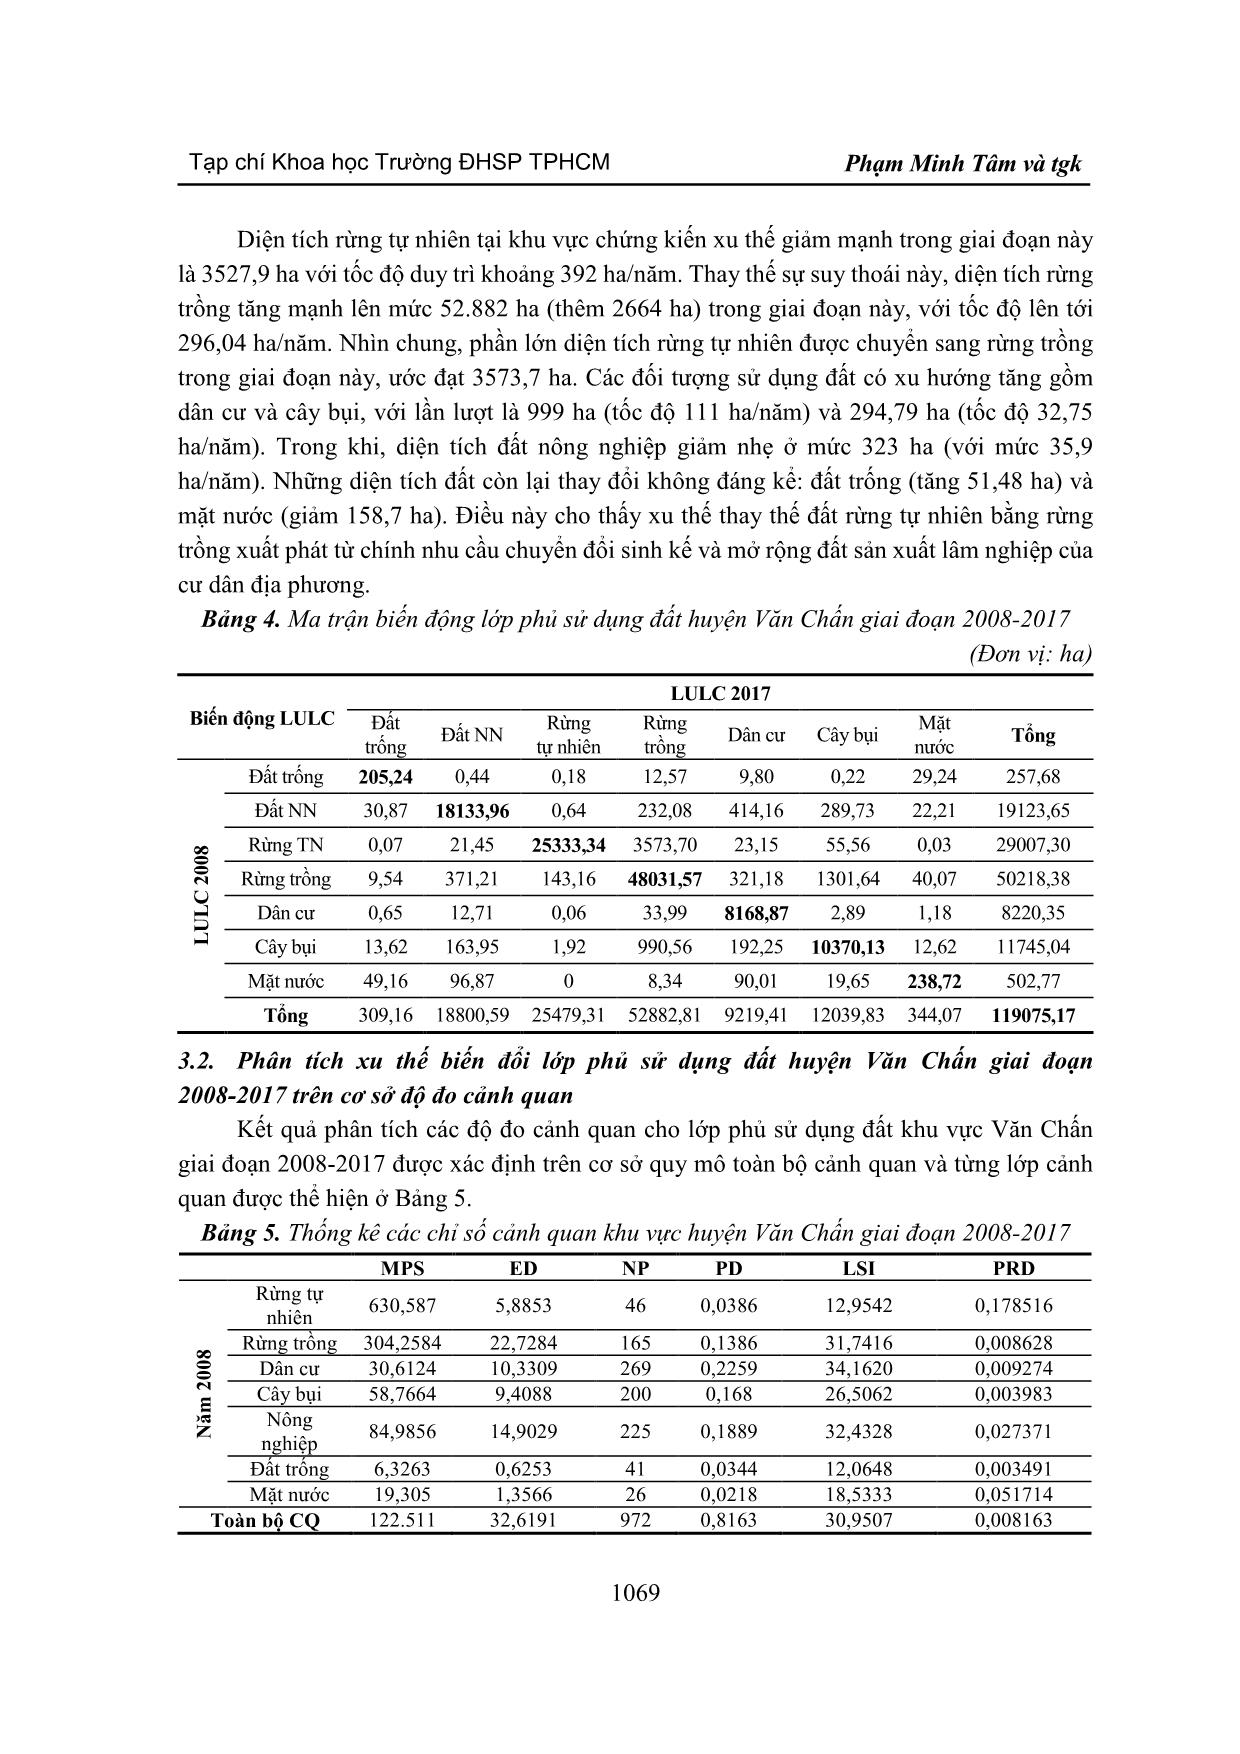 Ứng dụng viễn thám và độ đo cảnh quan trong phân tích xu thế biến động sử dụng đất khu vực huyện Văn Chấn, tỉnh Yên Bái giai đoạn 2008-2017 trang 7